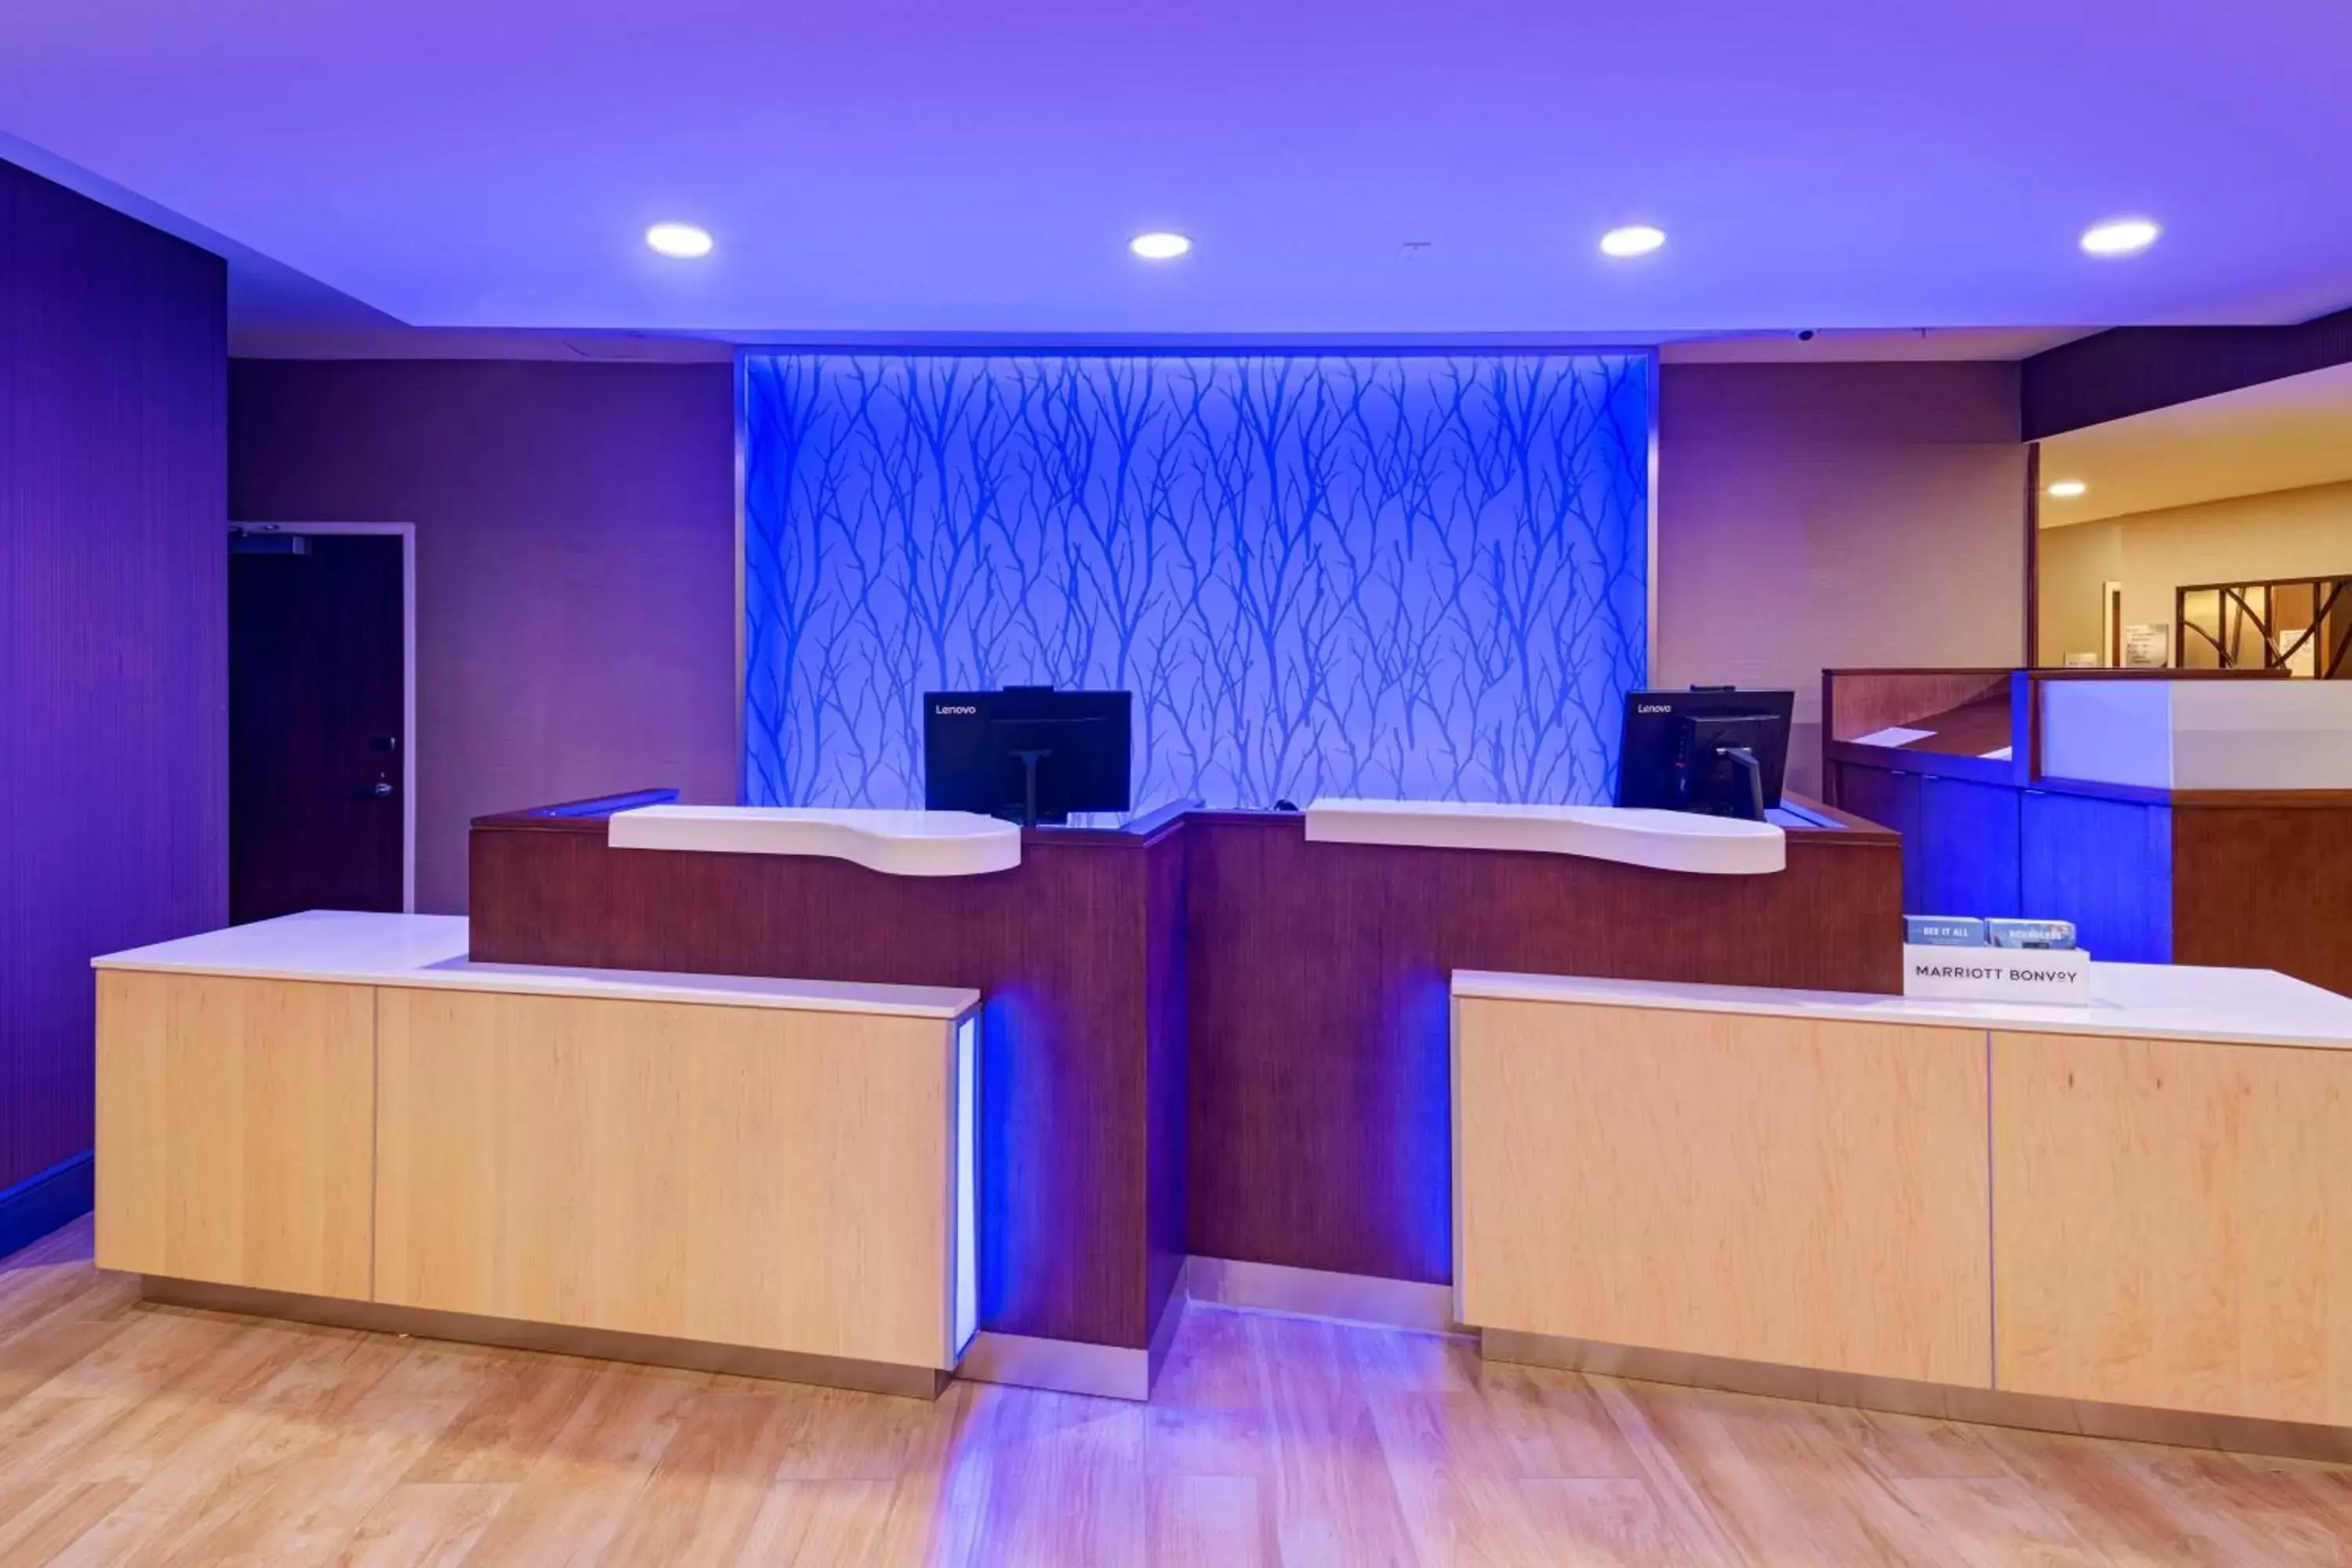 Lobby or reception in Fairfield Inn & Suites Houston Richmond